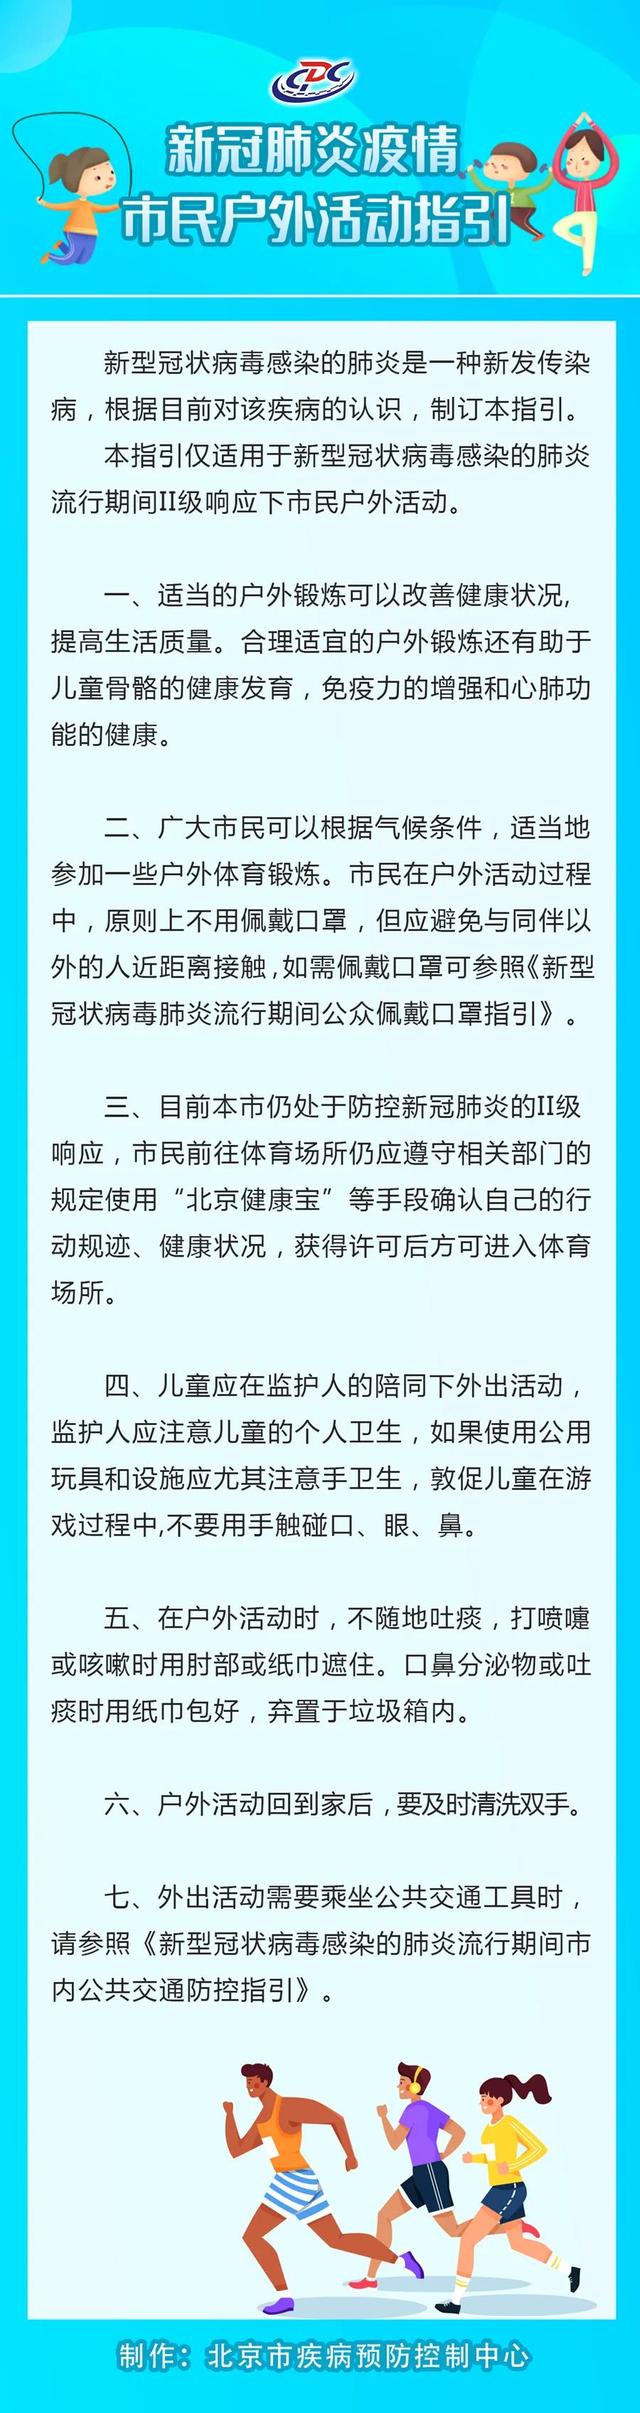 北京疾控中心發佈新冠肺炎疫情市民戶外活動指引]北京市疾病預防控制中心微信公眾號圖片^